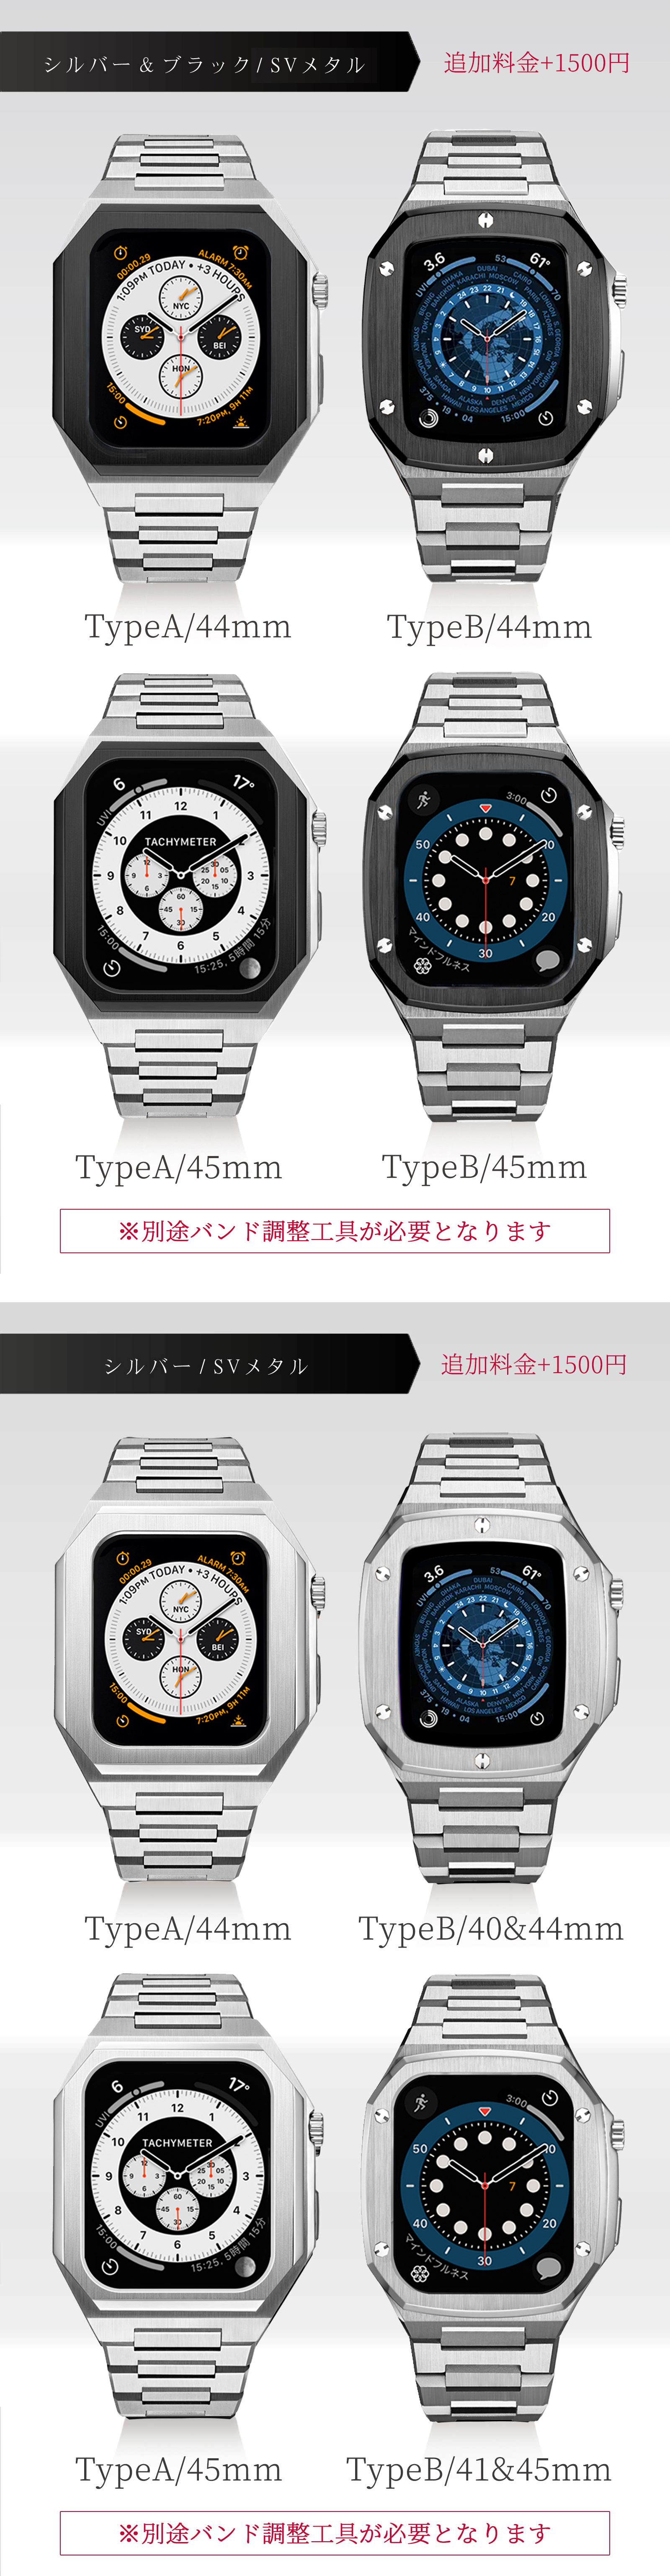 アップルウォッチ SINNIS Apple Watch 